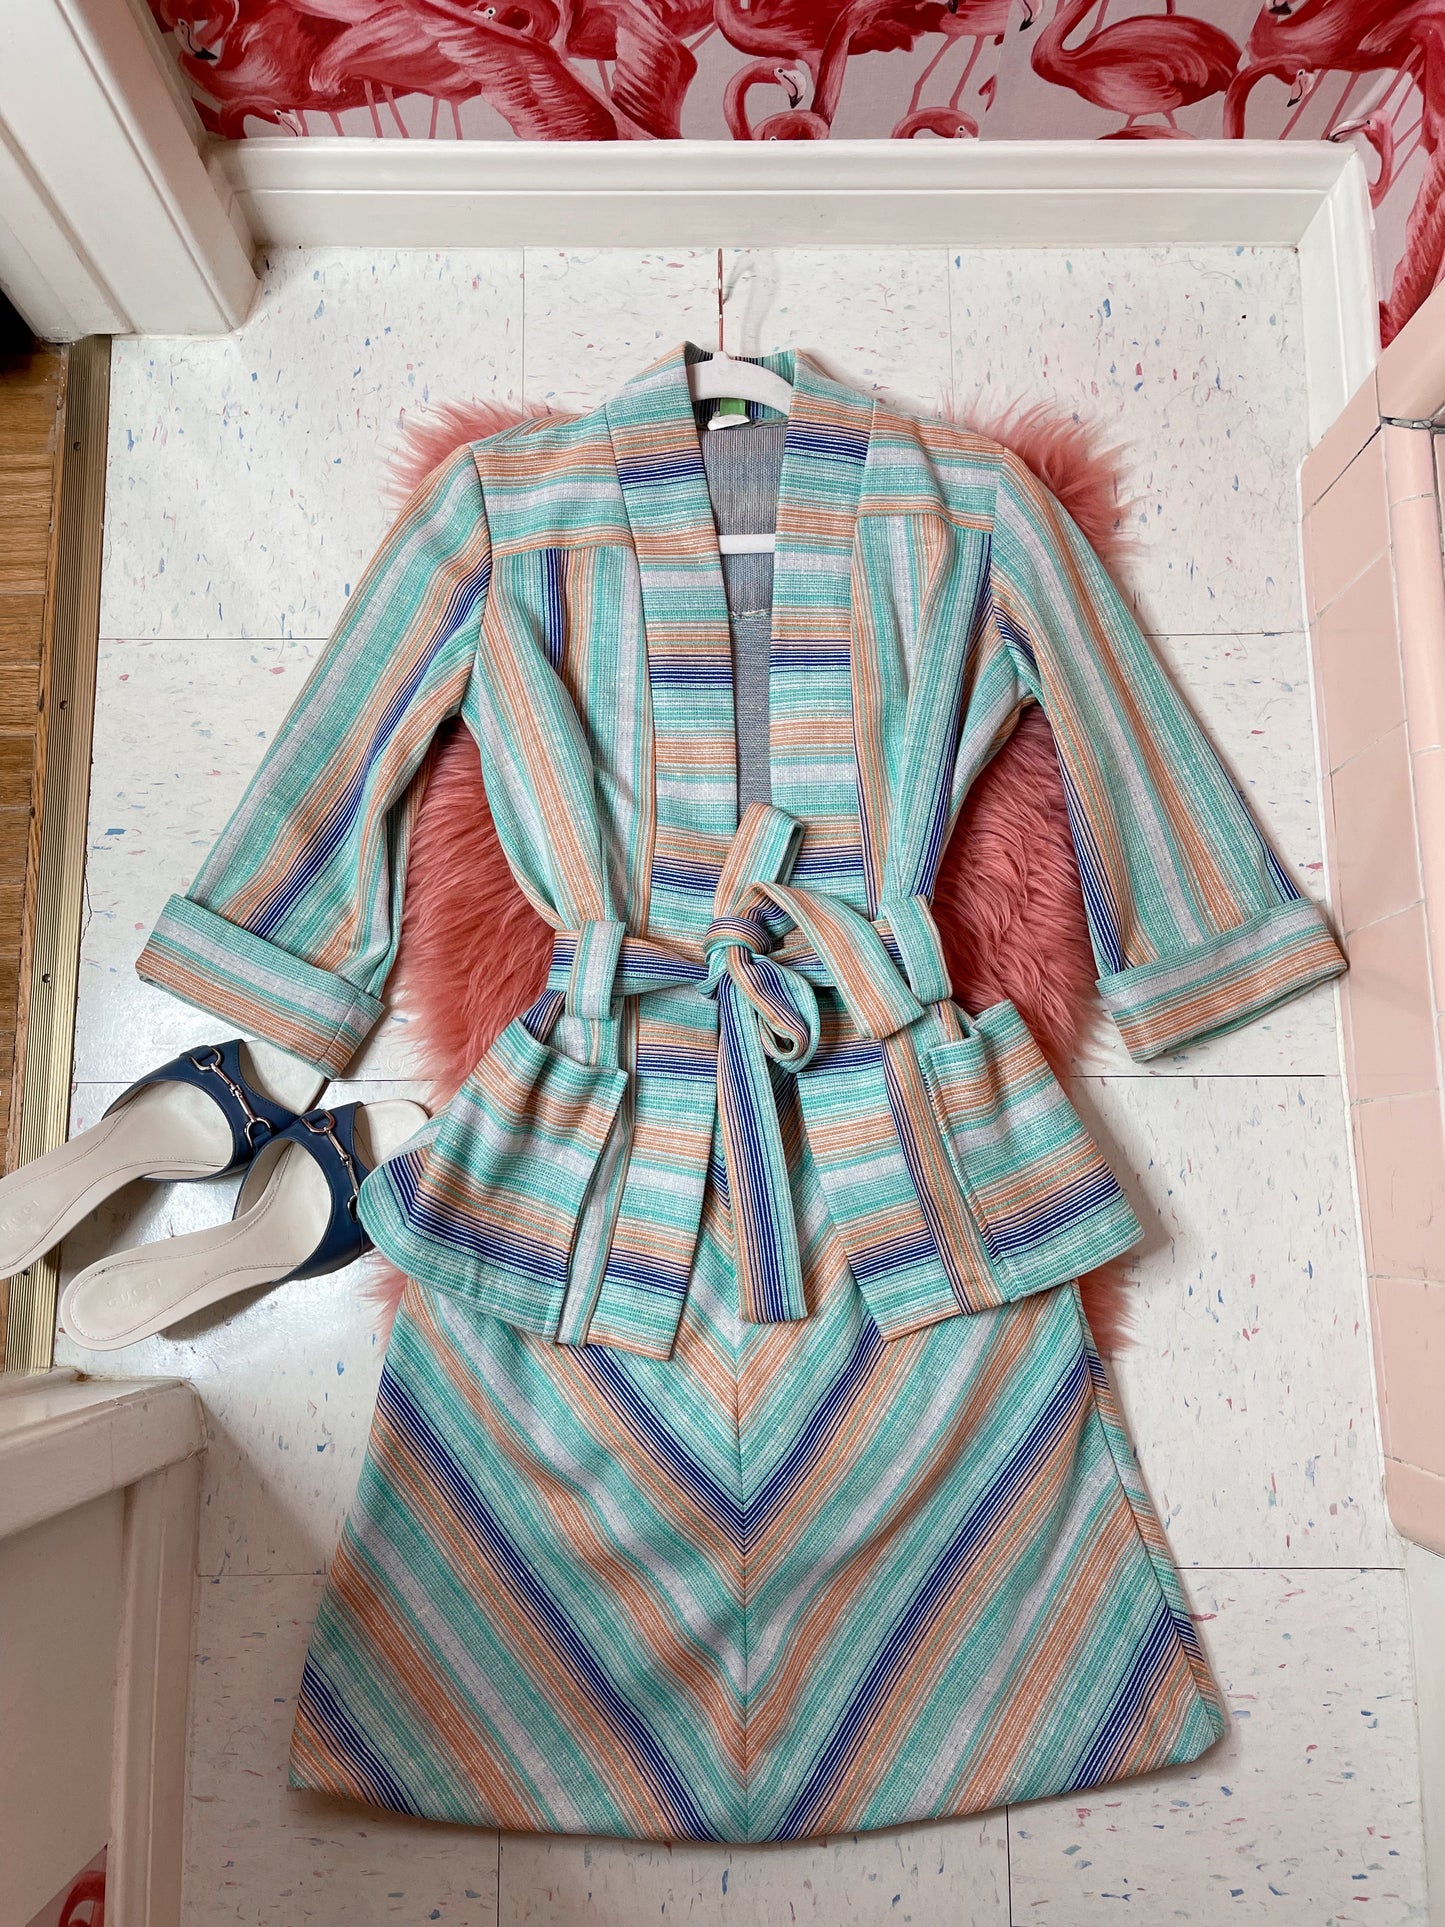 Vintage 70s Striped Kimono Style Jacket Skirt Set Fits Sizes XS-M